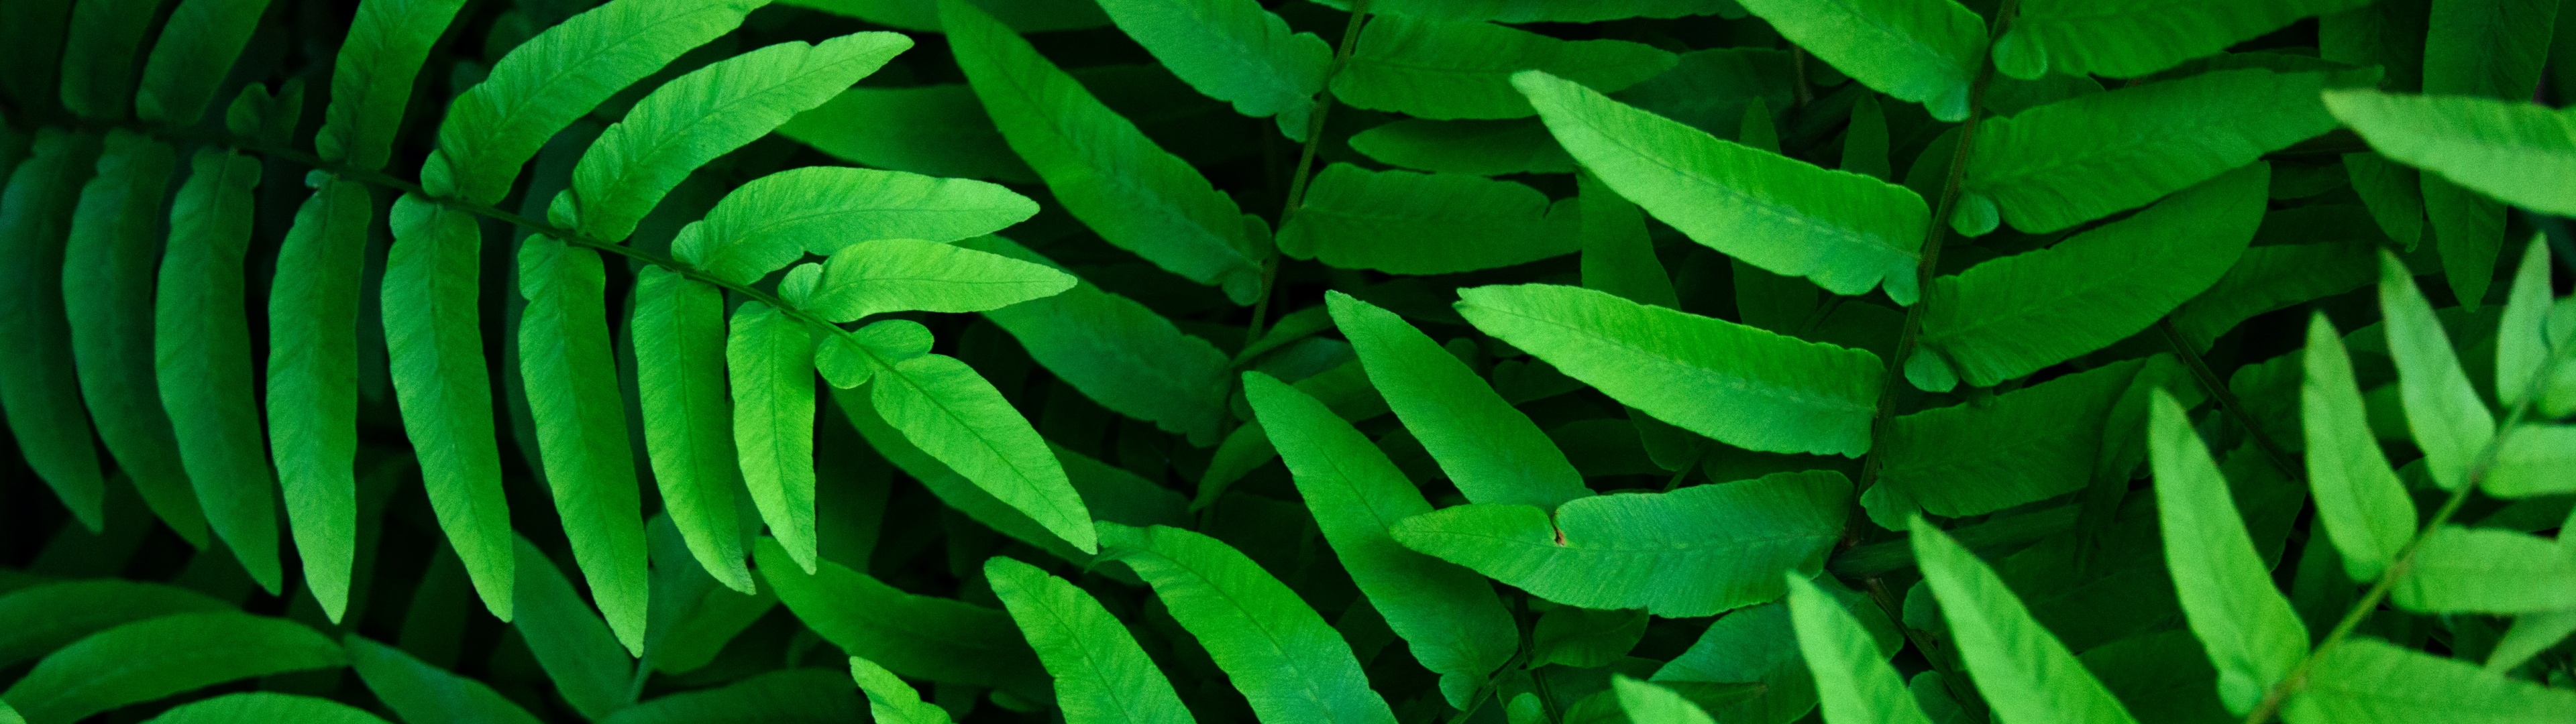 Green leaves Wallpaper 4K, Ferns, Leaf Background, Spring, Closeup, 5K, Nature